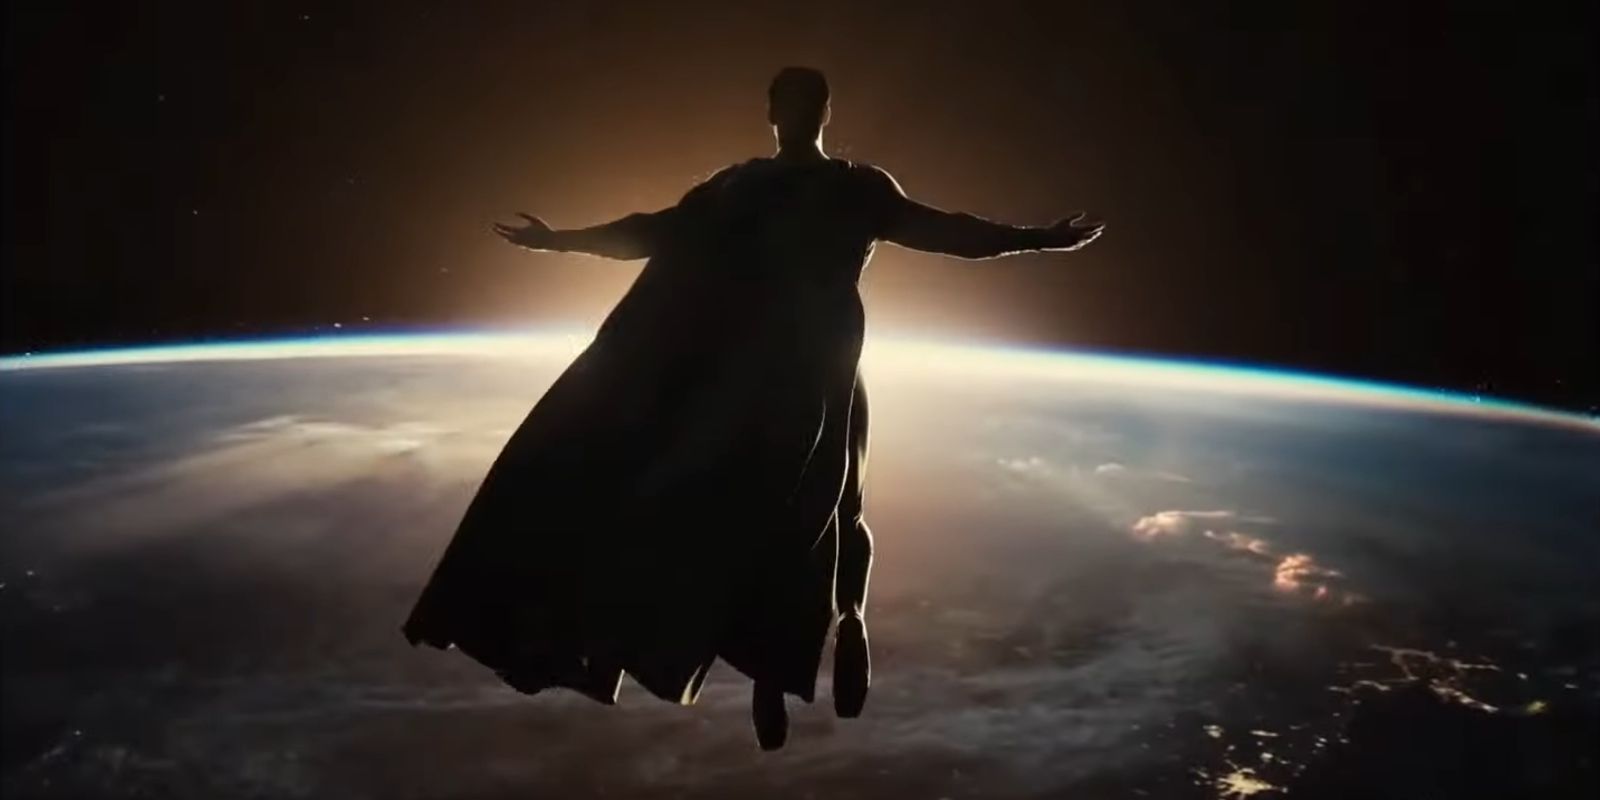 10 теорий фильмов о Супермене, которые полностью меняют приключения «Человека из стали» на большом экране